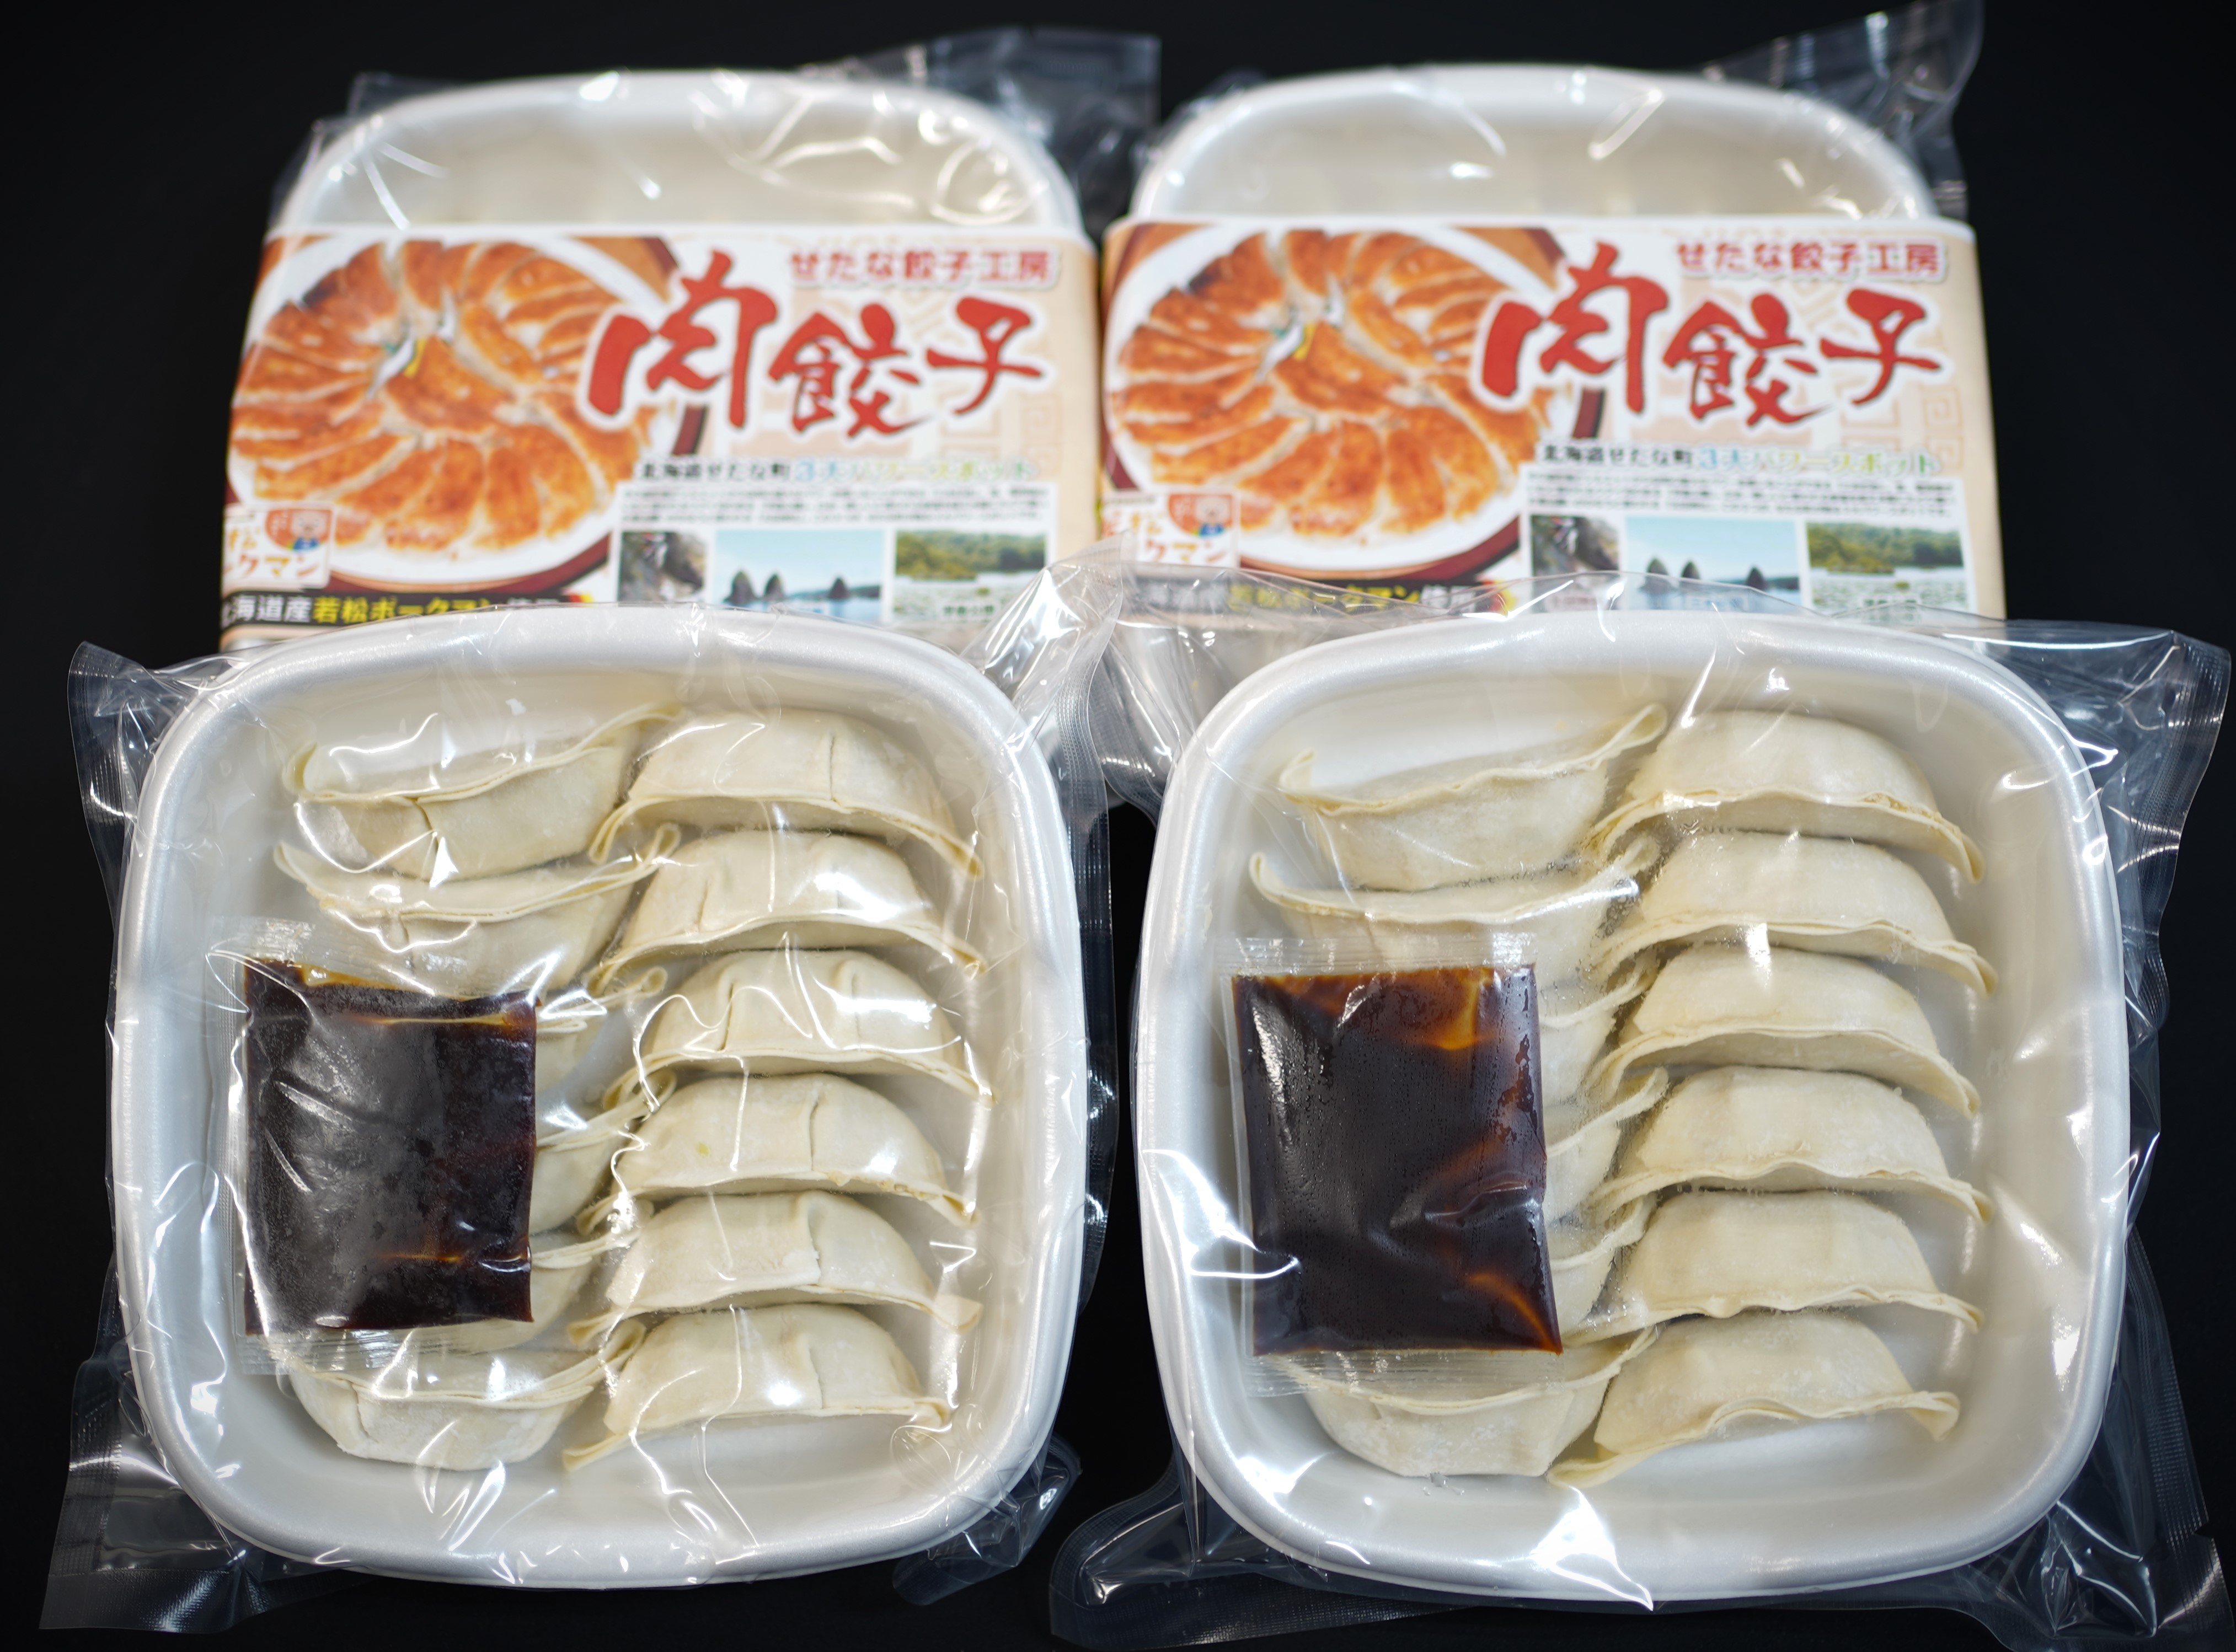 北海道ブランドSPF豚「若松ポークマン」を使った肉餃子48個(12個入り×4パック)